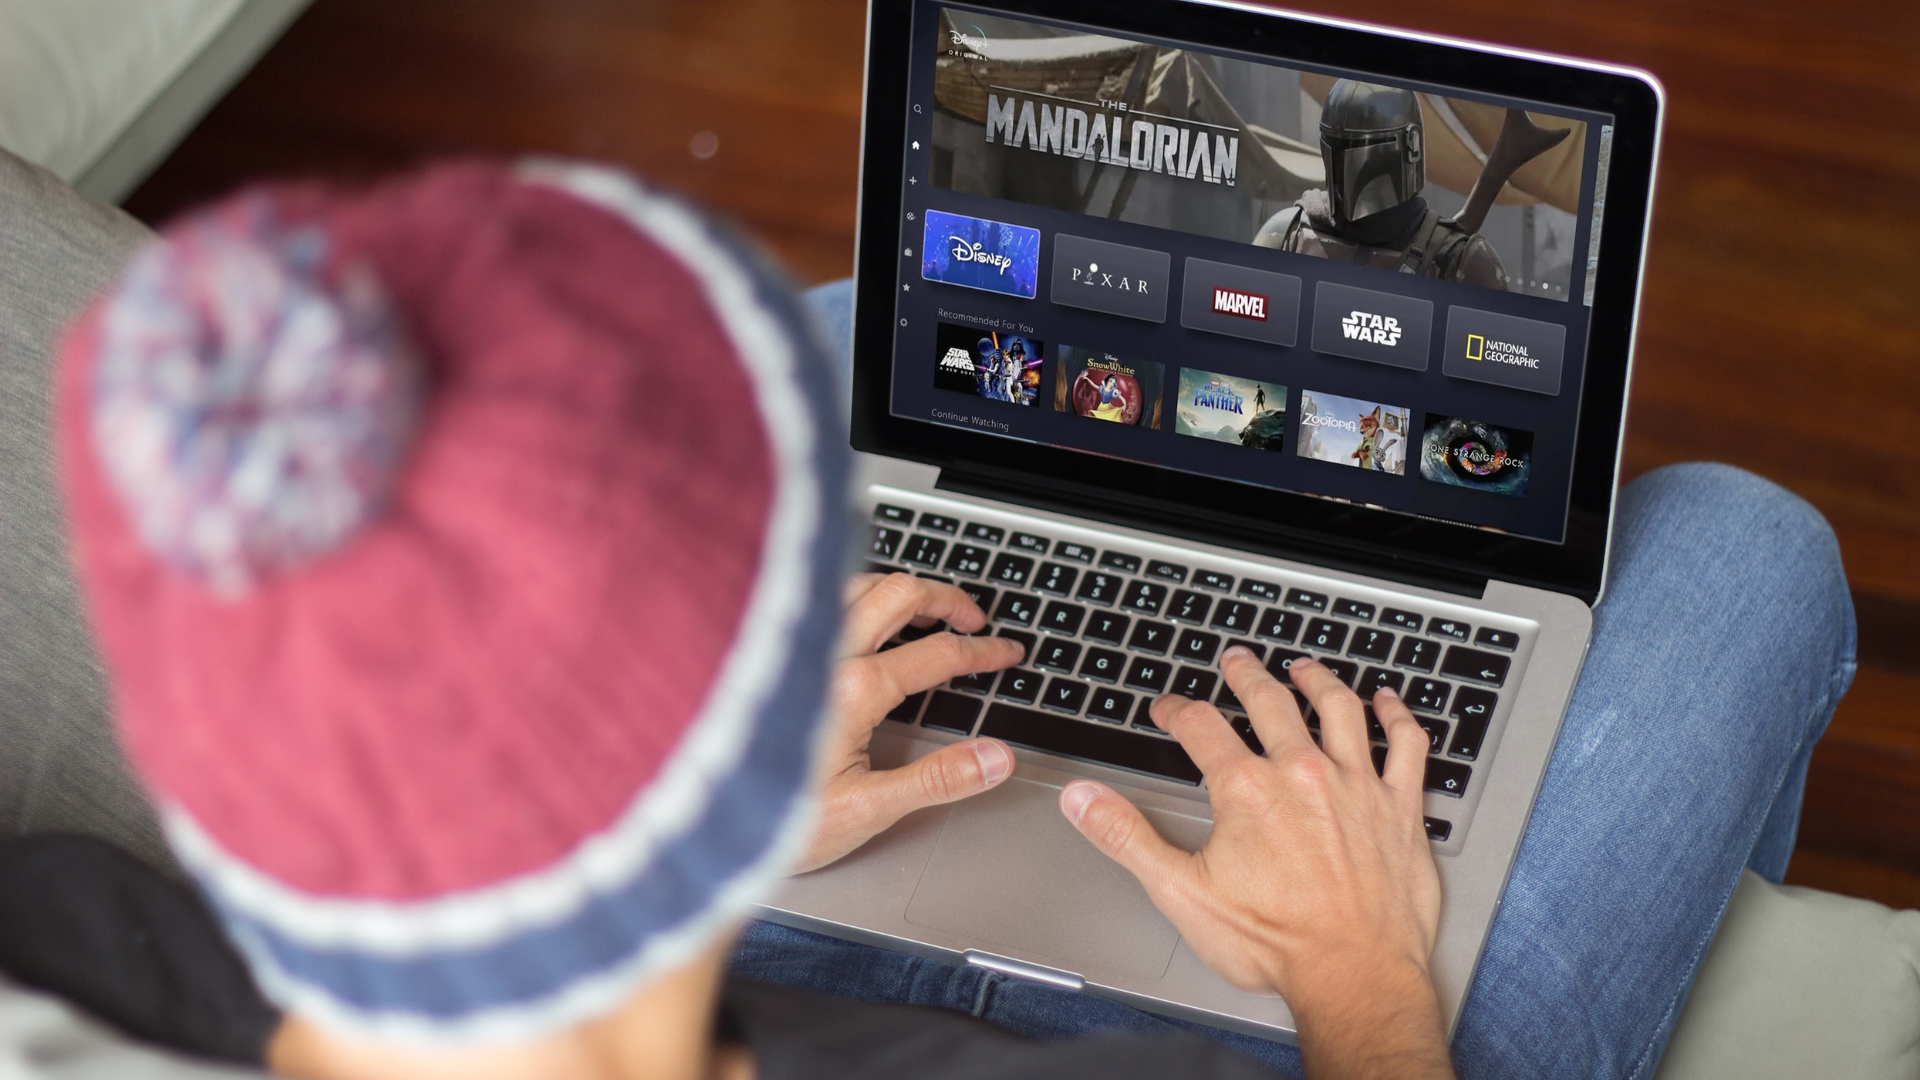 Man in hat watching Mandalorian Disney plus on laptop